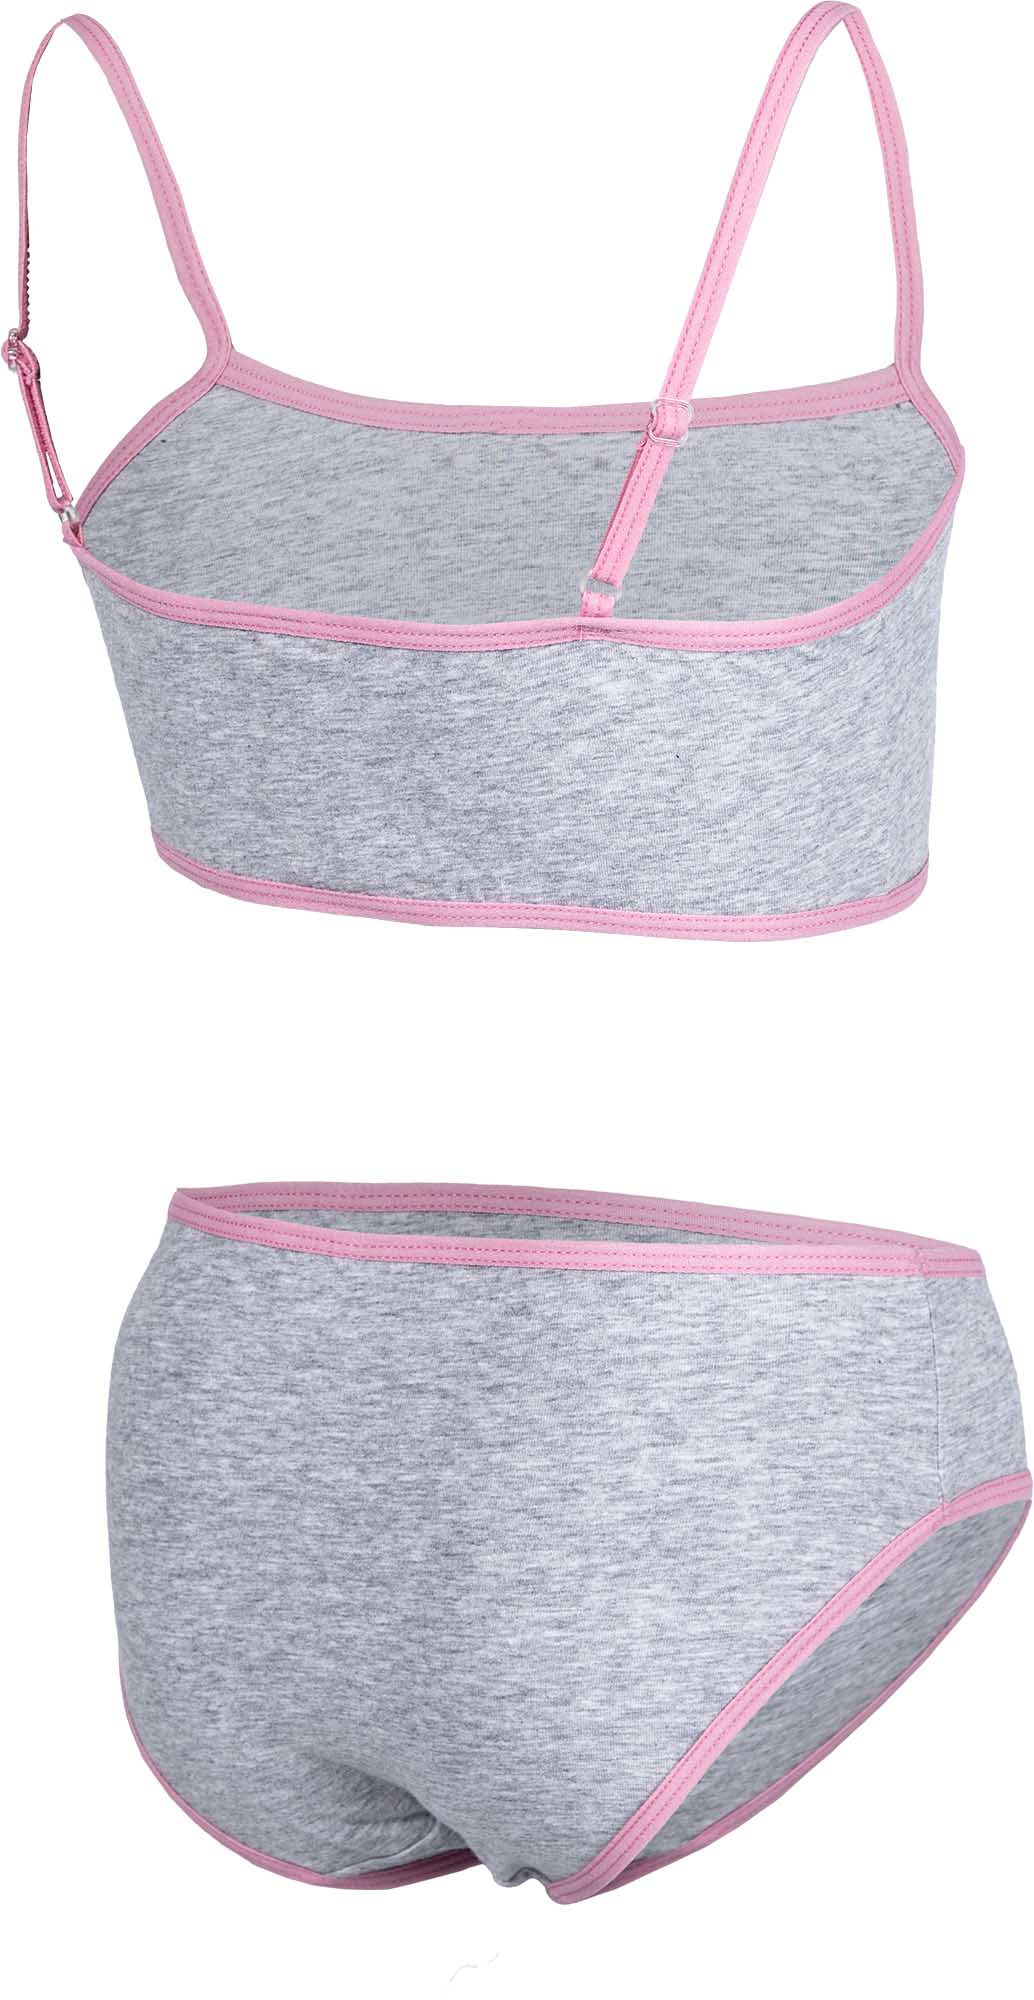 Girls’ underwear set